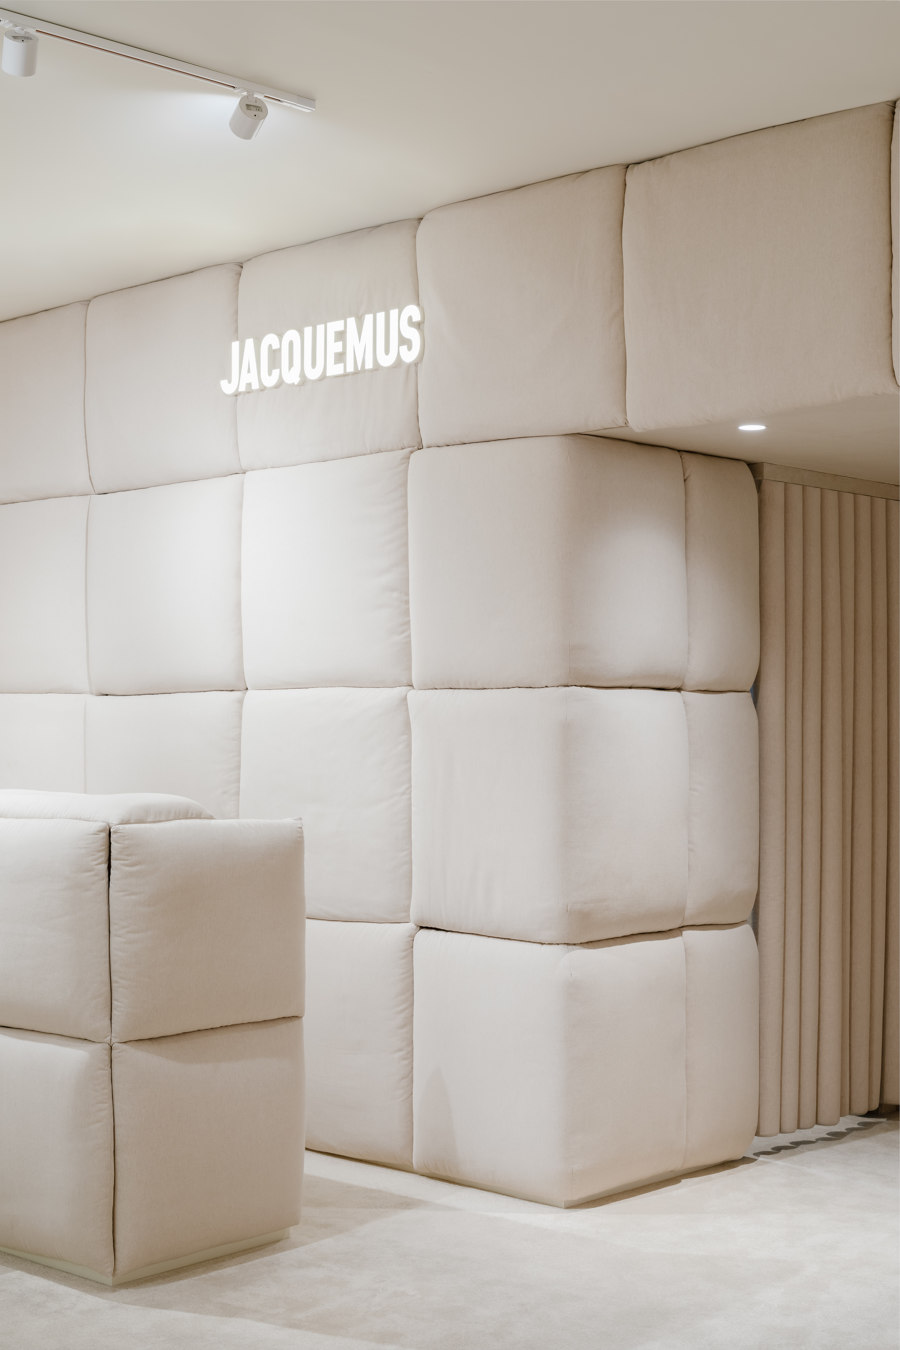 Jacquemus Store von AMO | Shop-Interieurs